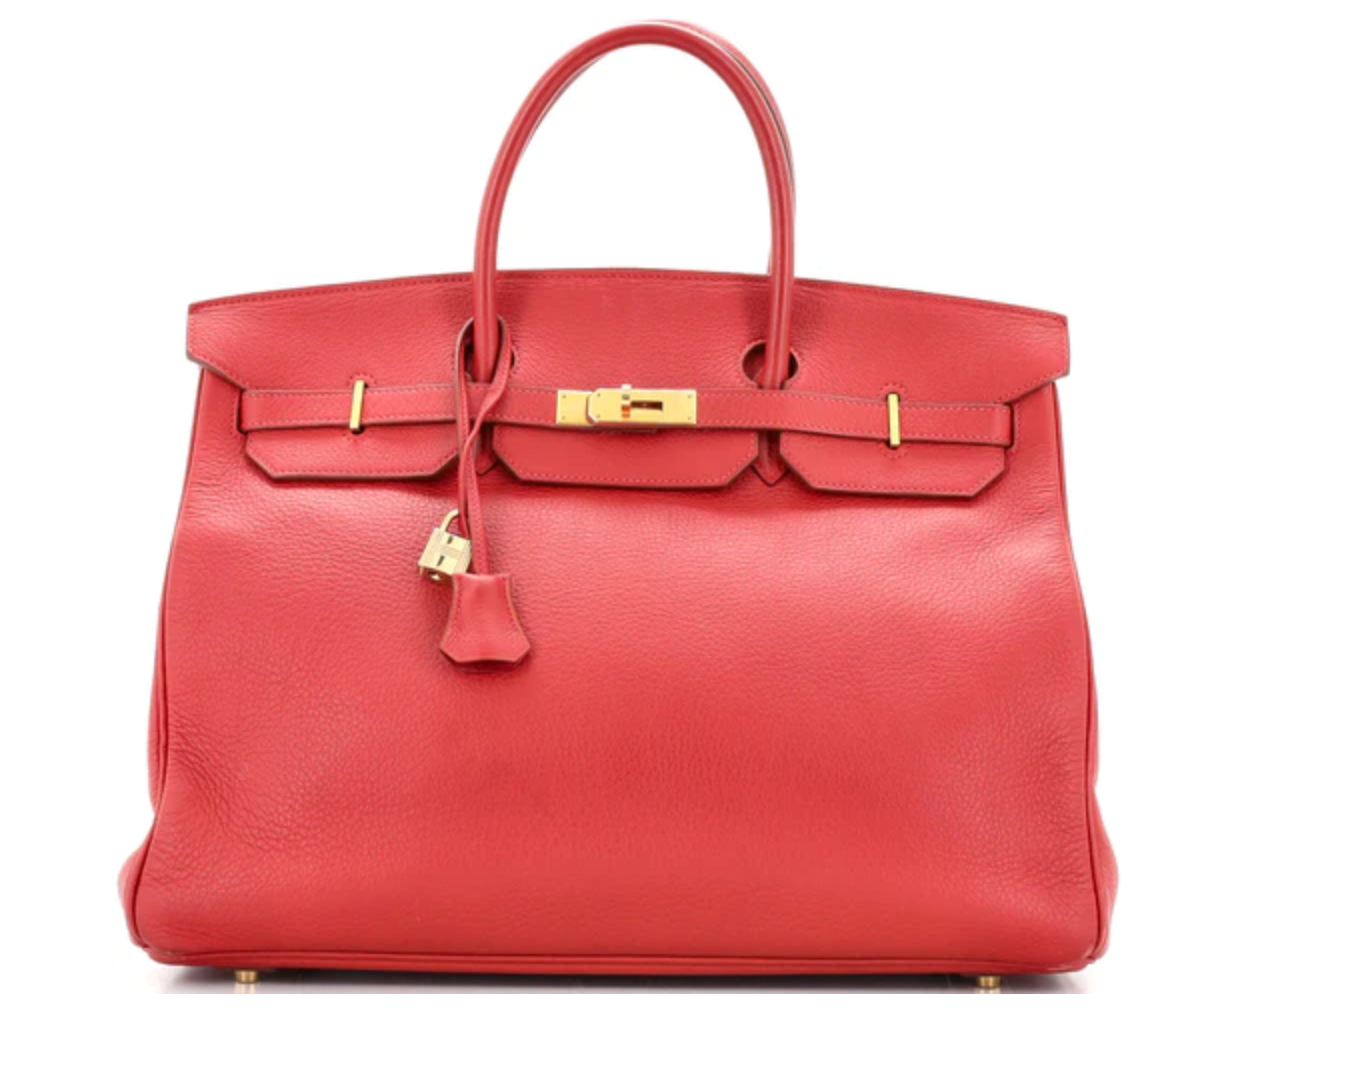 Preloved Hermes Birkin Handbag Red Togo with Gold Hardware 40 012323